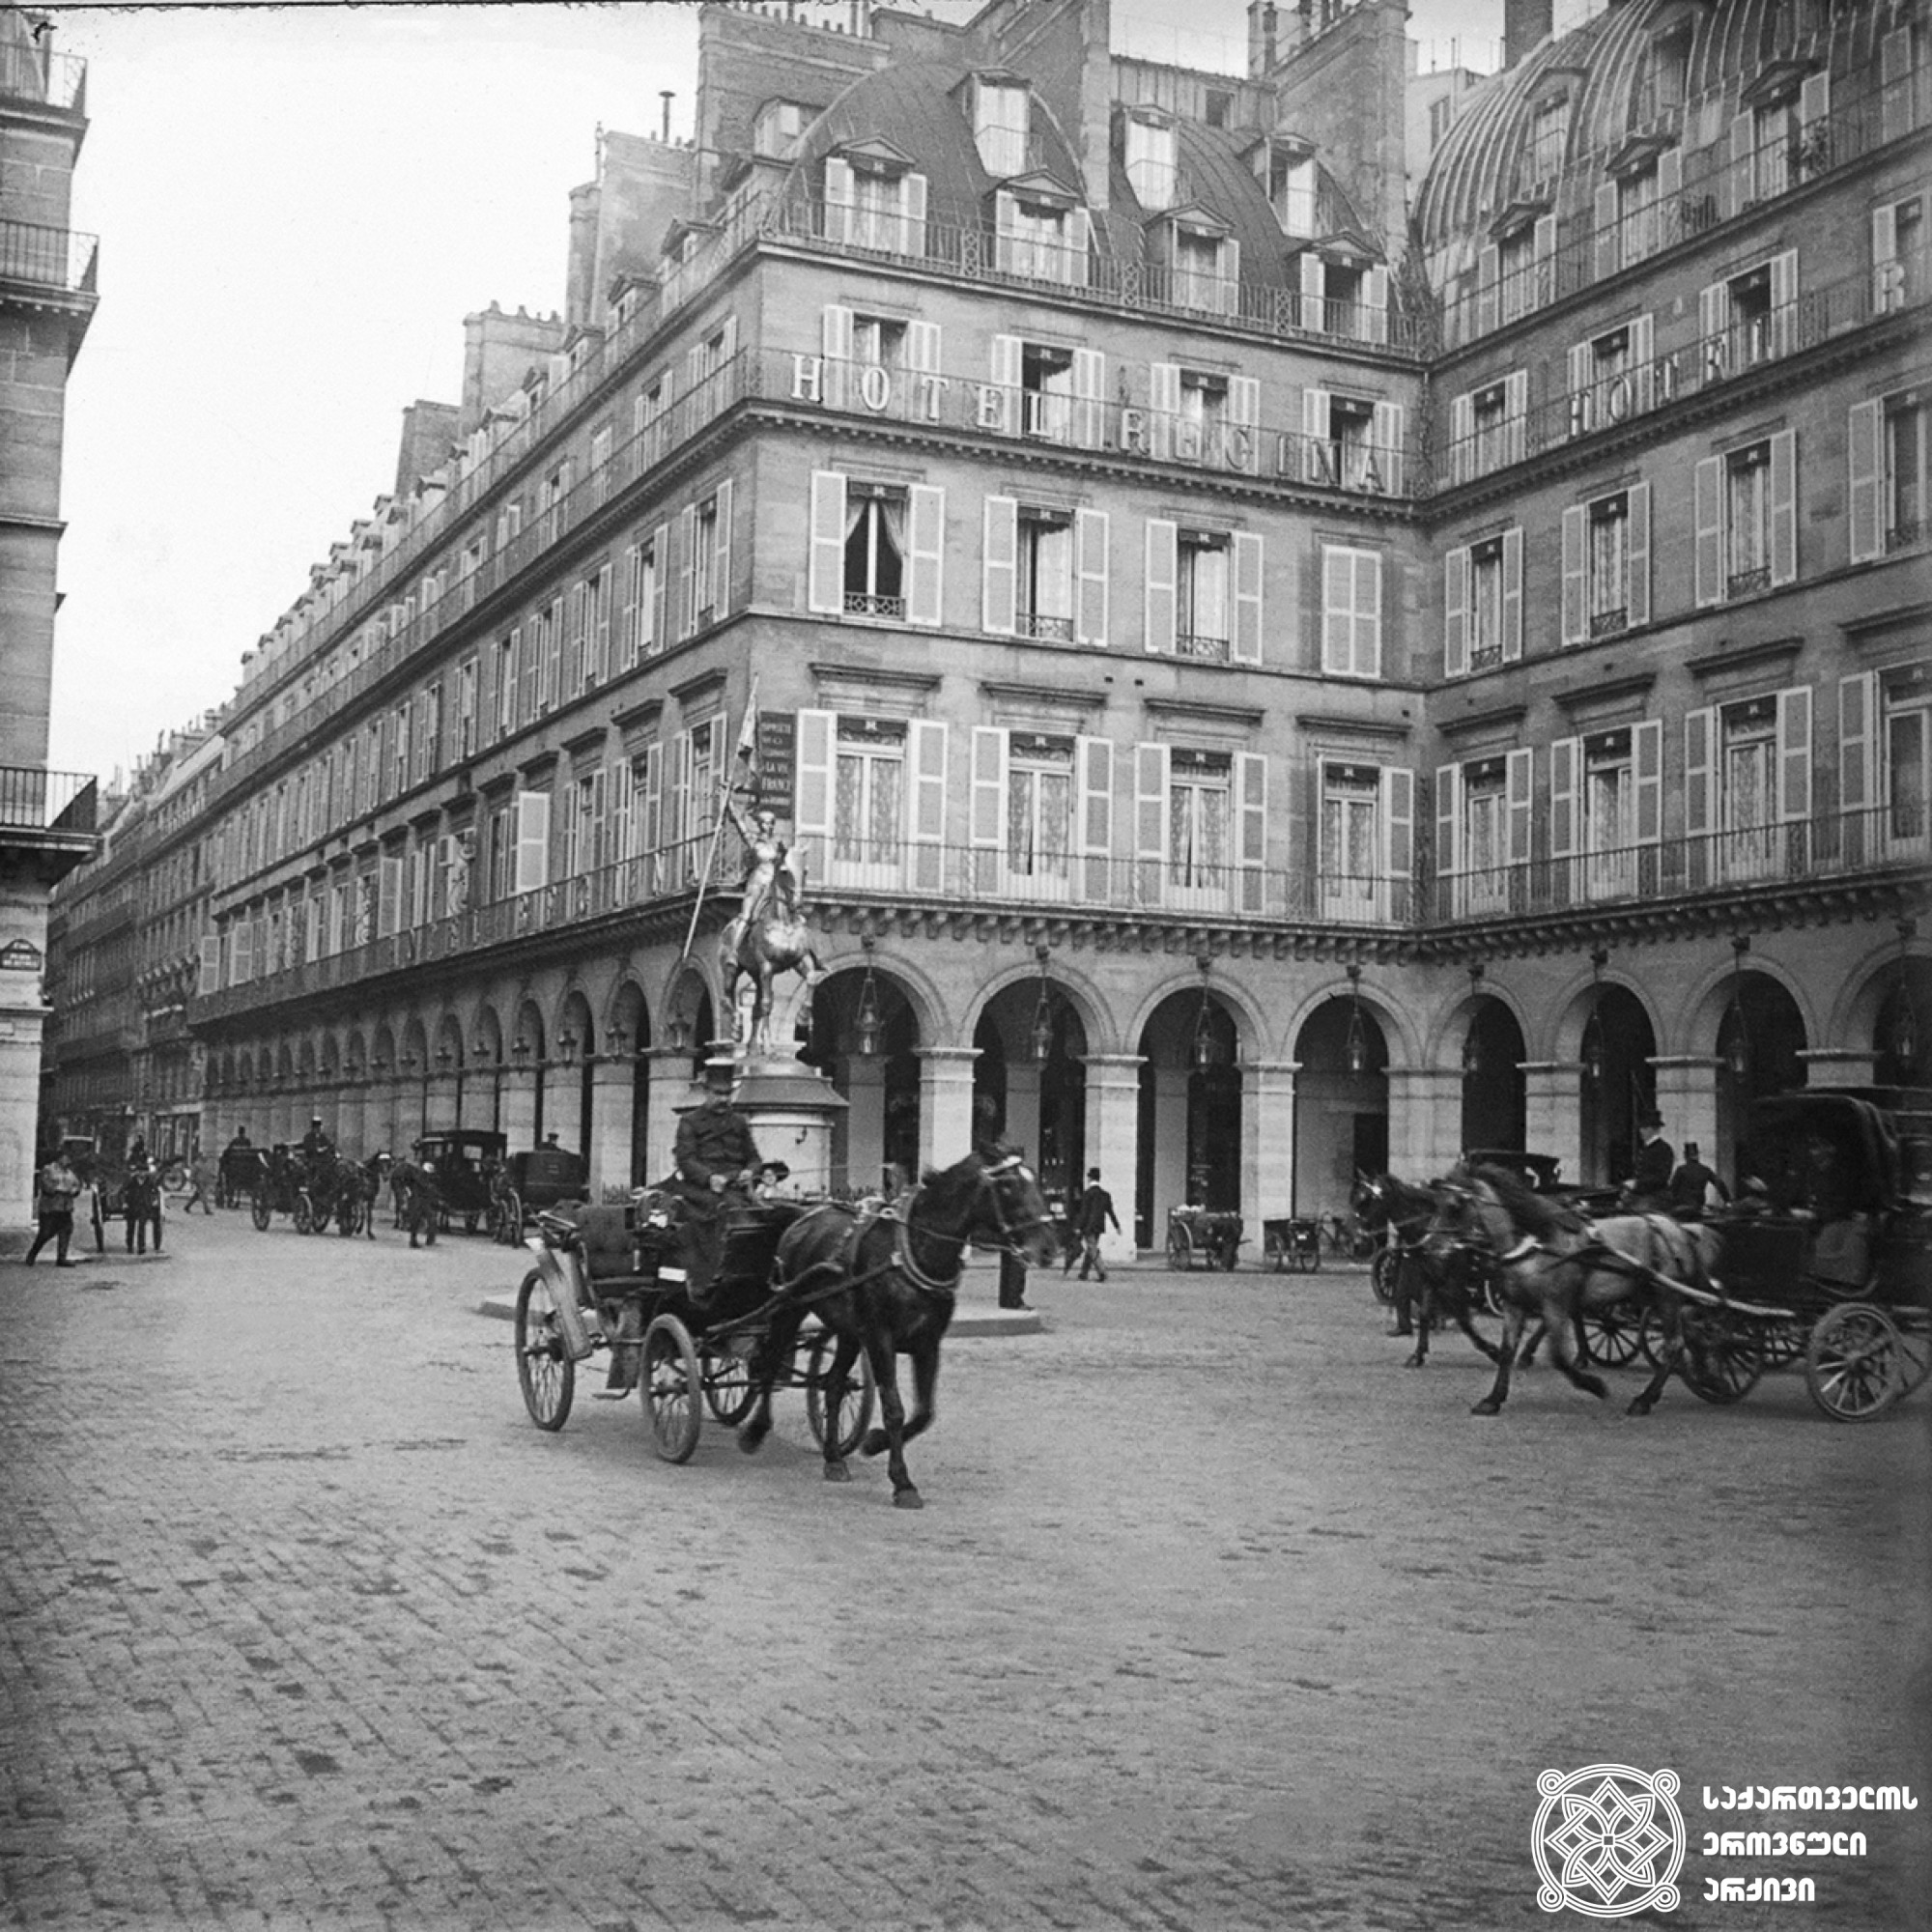 ჟანა დ’არკის ძეგლი, პარიზი <br>
1909 წელი <br>
გიგლო ყარალაშვილის კოლექცია <br>

Monument to Jeanne d'Arc, Paris <br>
1909 <br>
Giglo Karalashvili collection <br>